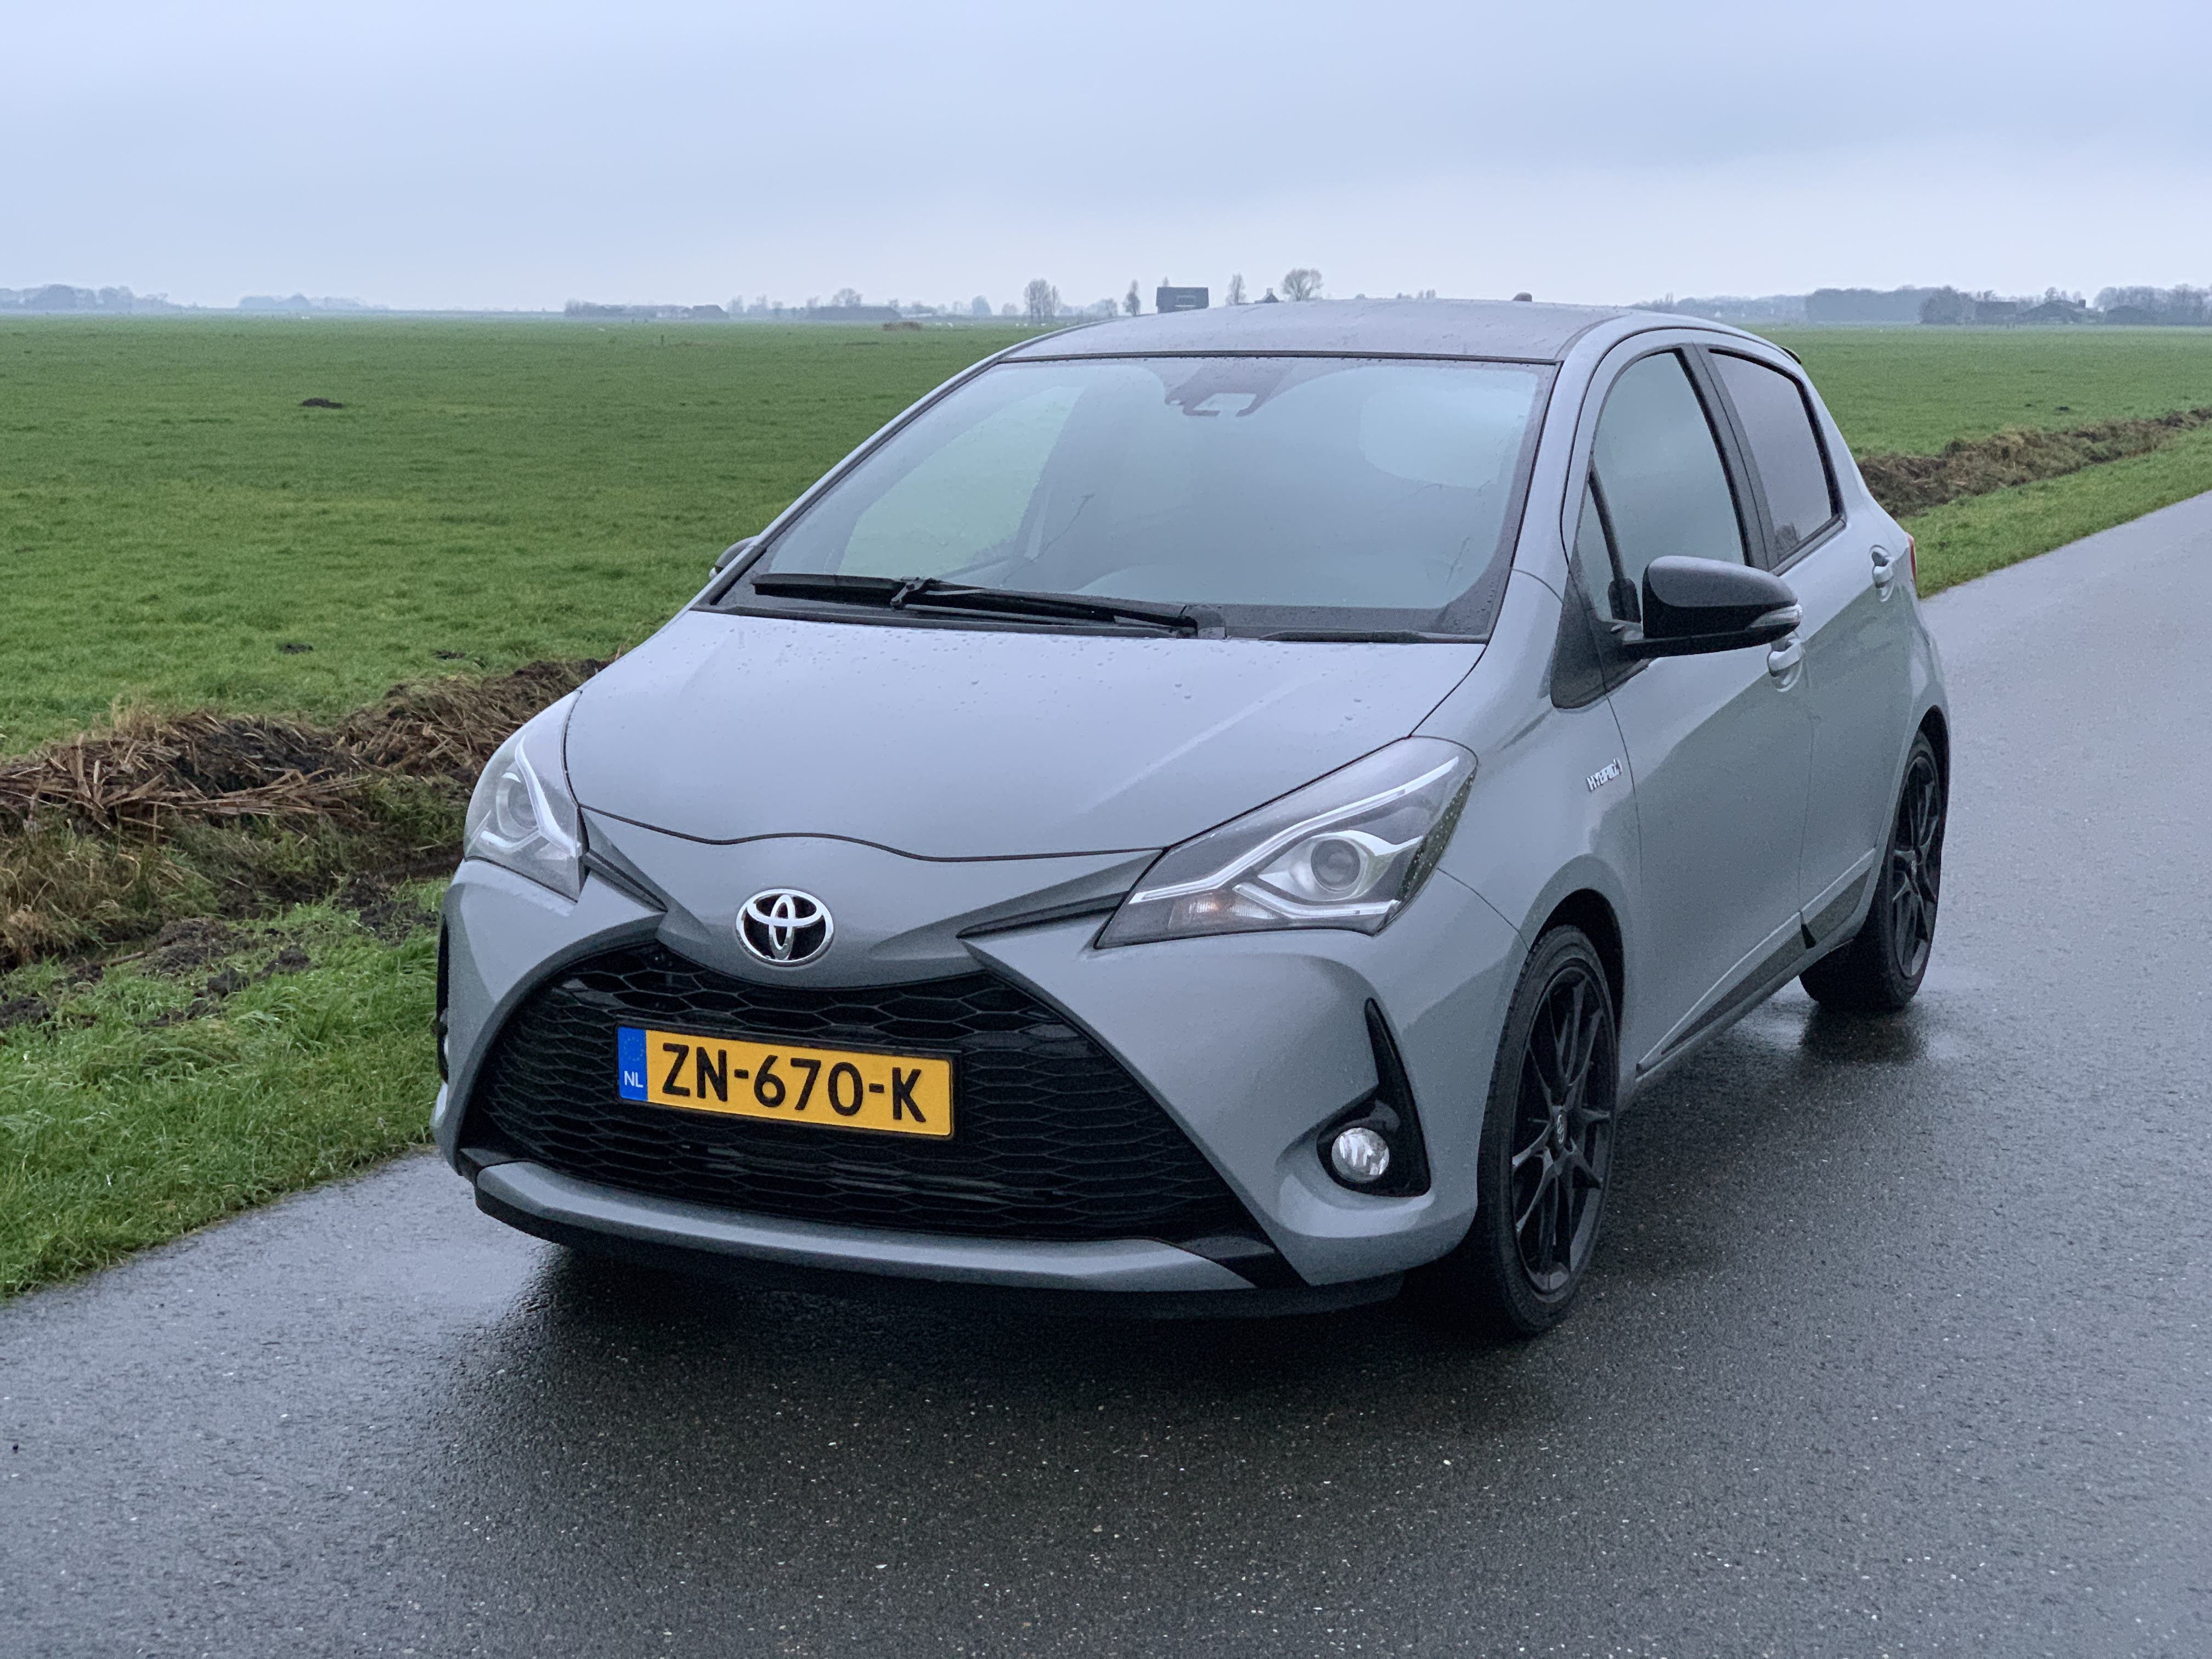 Ondraaglijk bijtend versus Test Toyota Yaris 1.5 Hybrid - Autoverhaal.nl